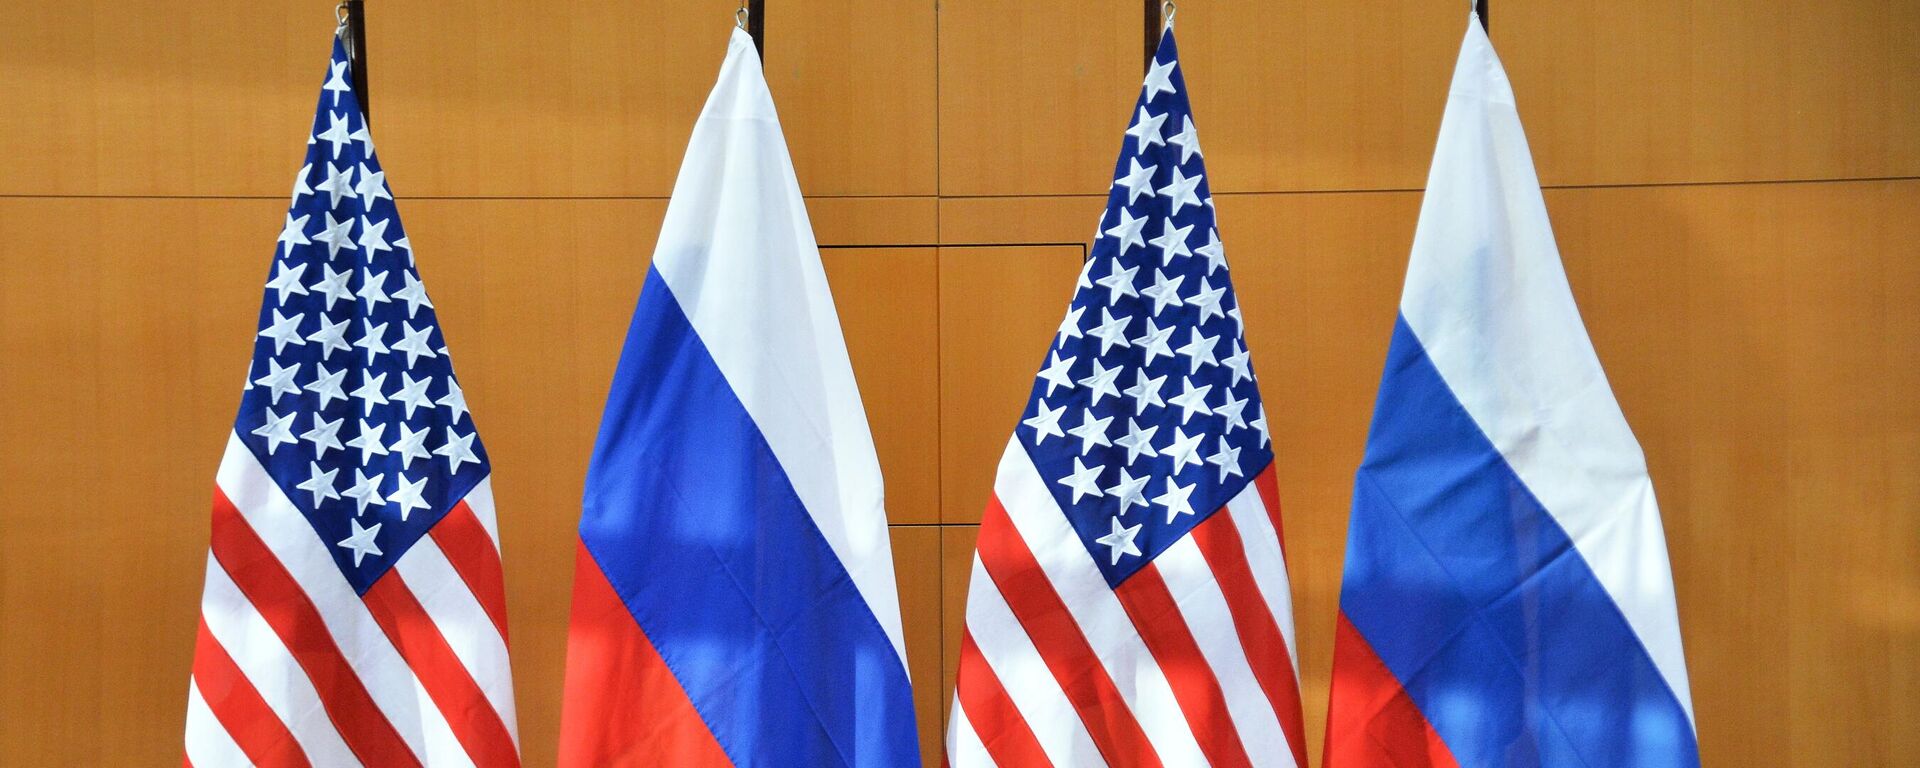 Zastave Rusije i SAD na bilateralnim pregovorima o bezbednosti u Ženevi - Sputnik Srbija, 1920, 16.01.2022